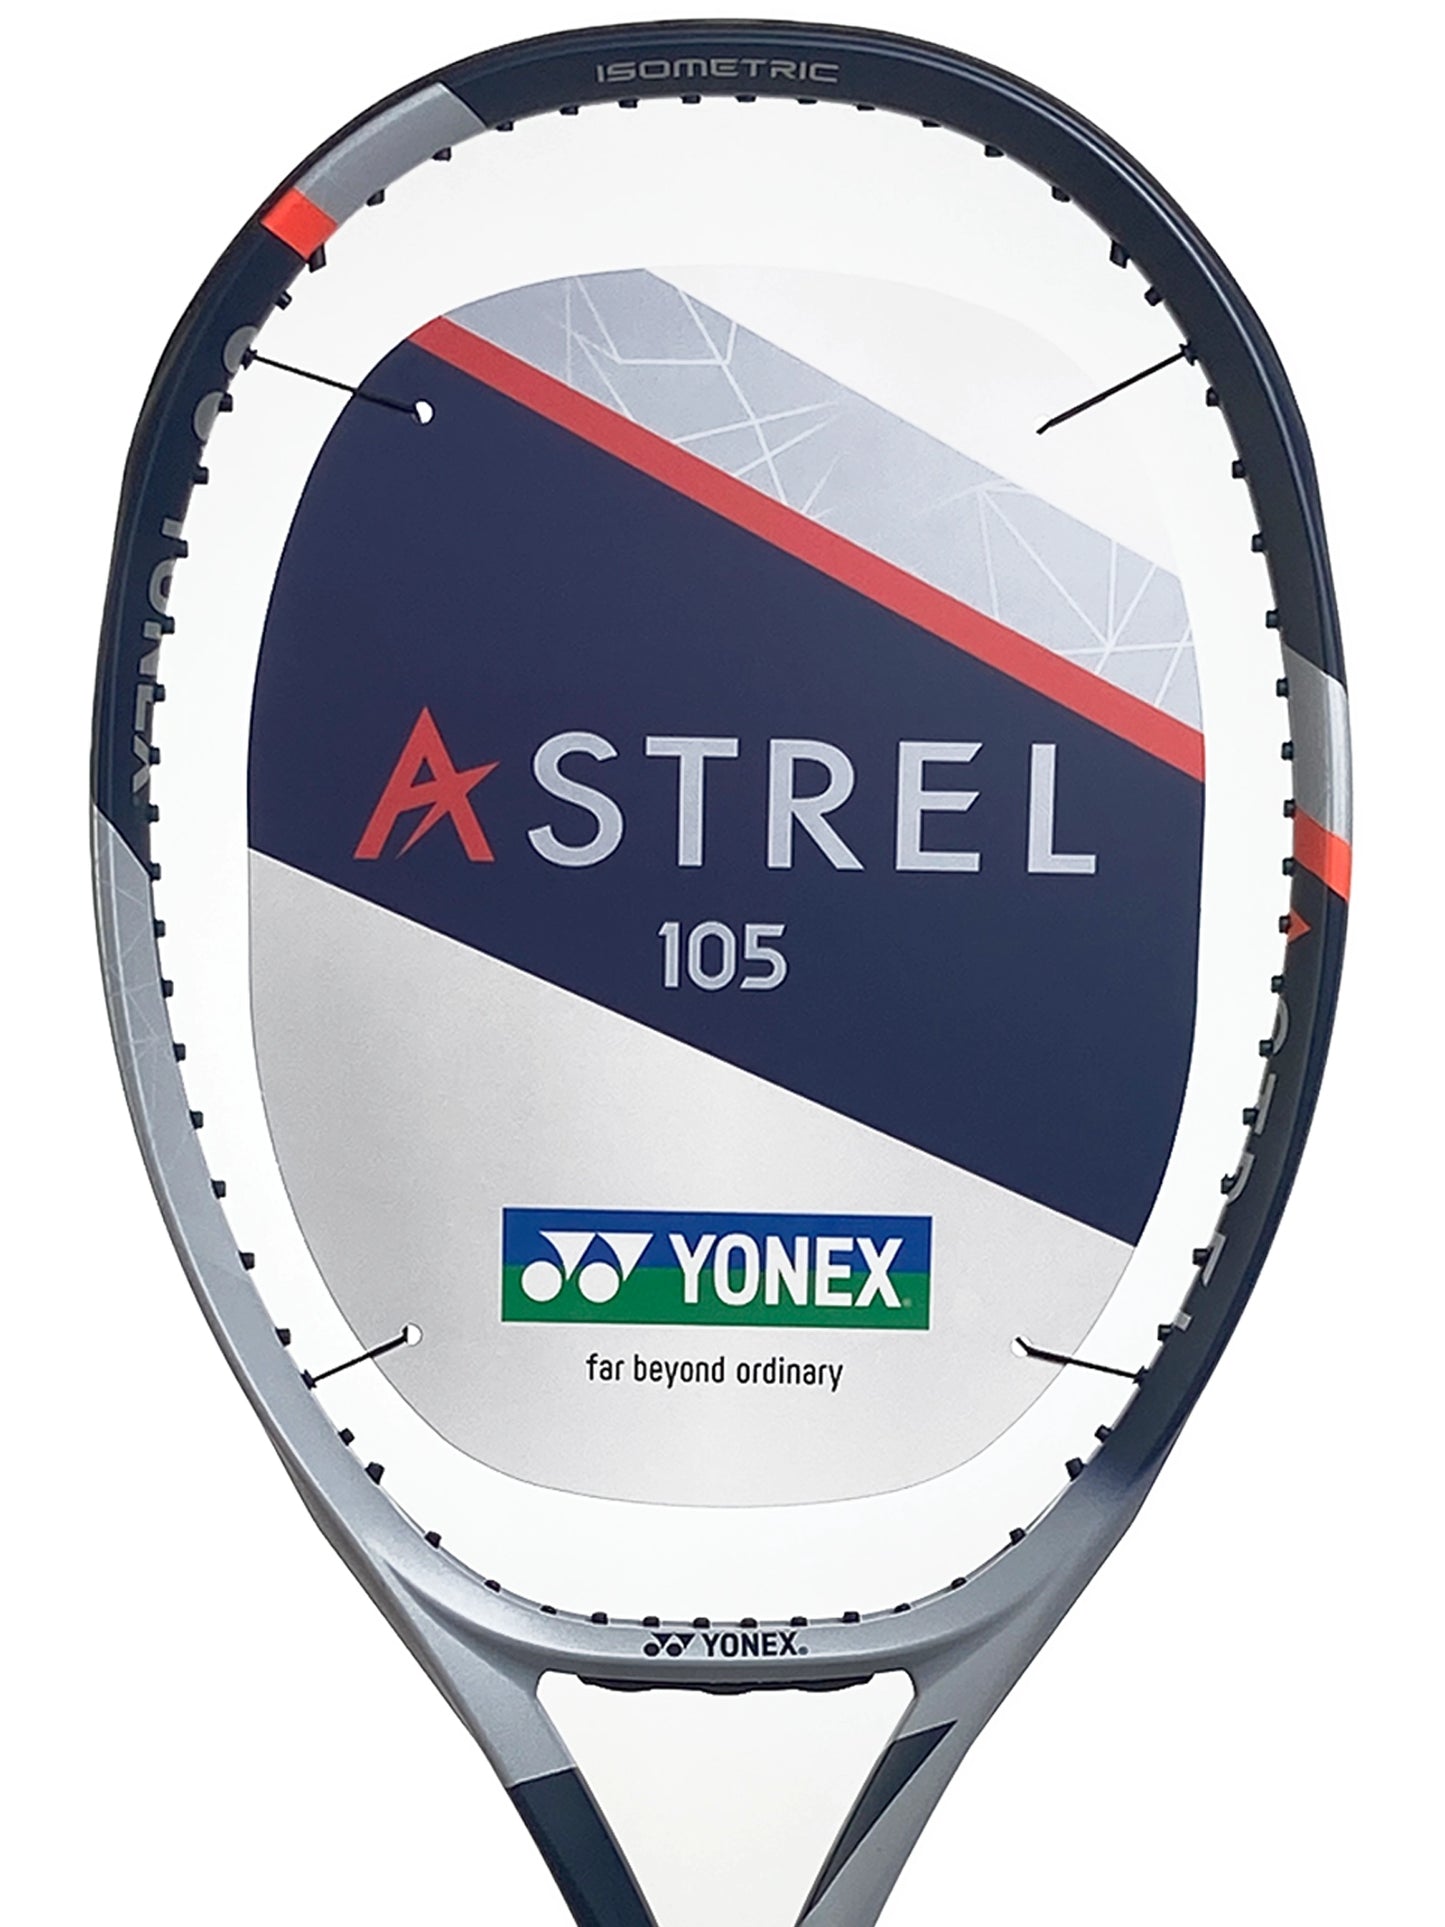 Yonex Astrel 105"